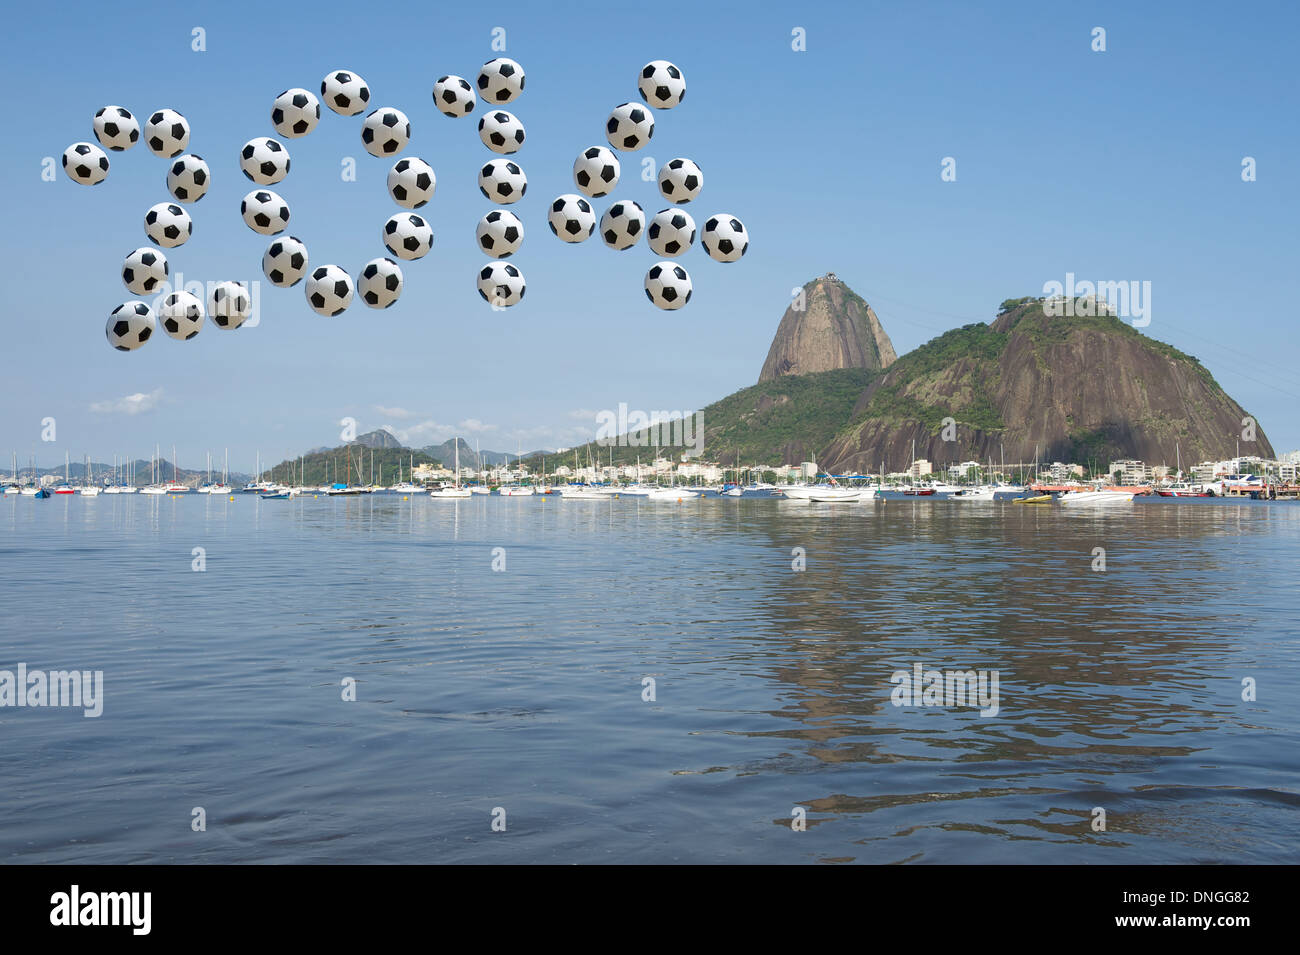 Brésil 2014 message dans le football soccer balls dans le ciel au-dessus de la montagne Sugarloaf Rio de Janeiro Banque D'Images